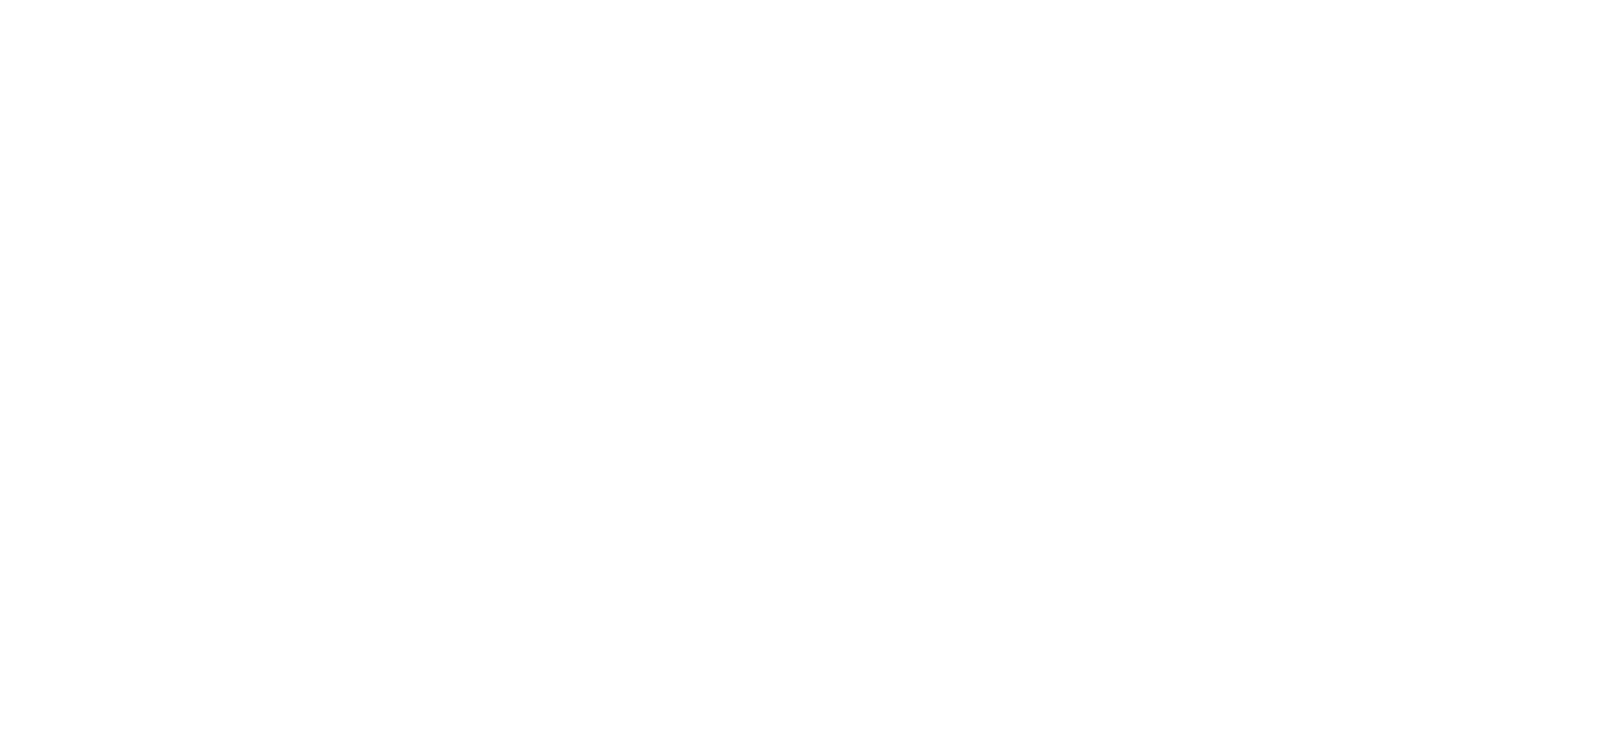 SSE logo large for dark backgrounds (transparent PNG)